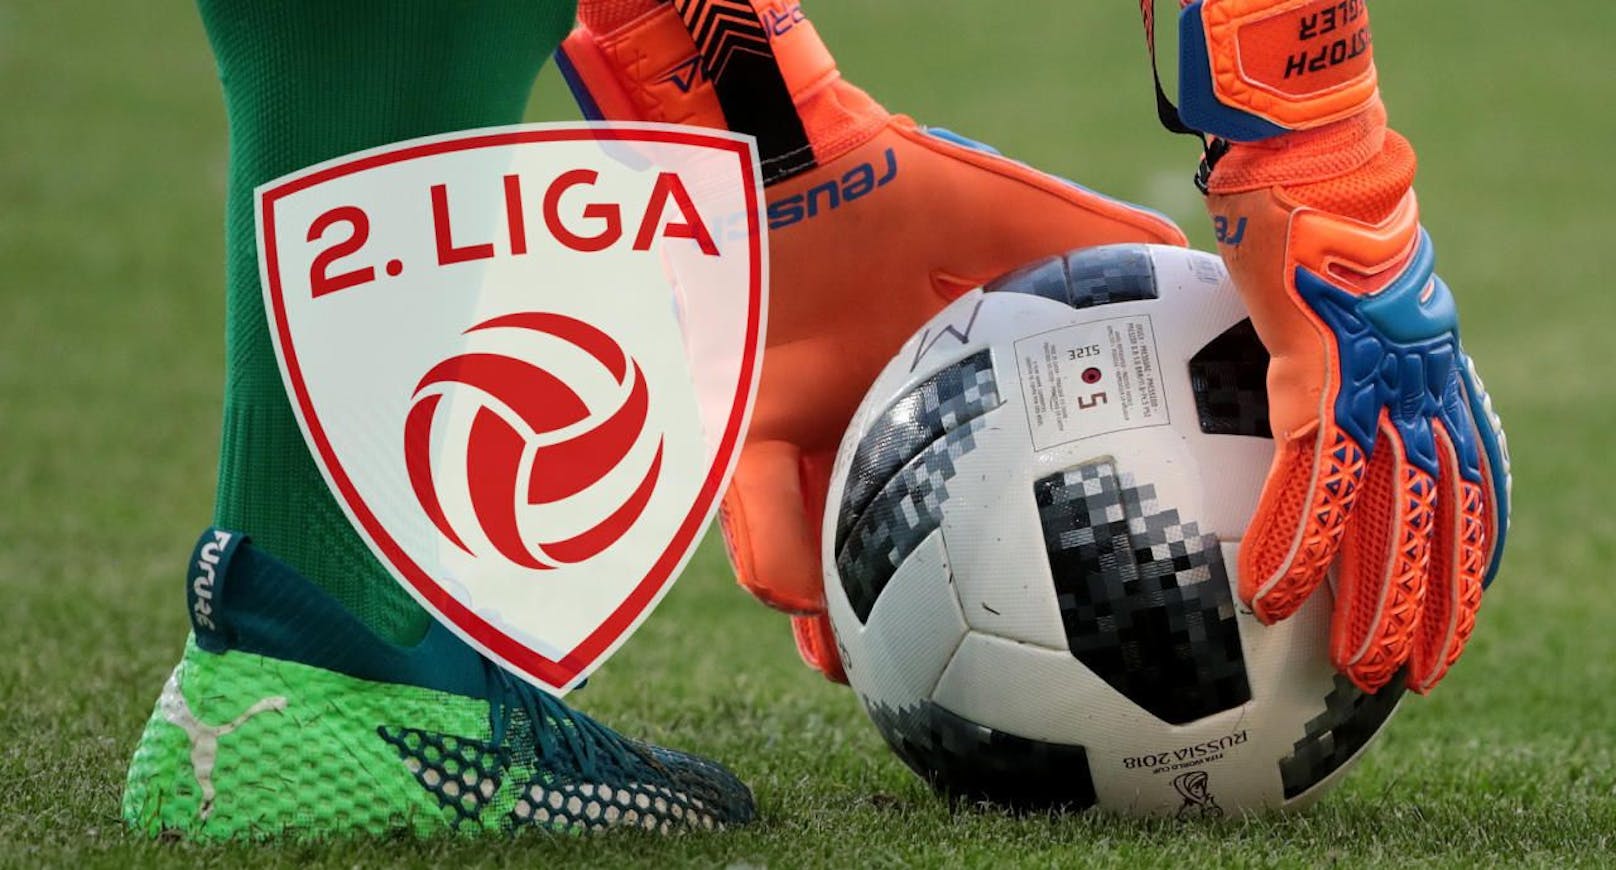 Die 2. Liga läuft ab der nächsten Saison auf laola1.at und ORF Sport+.